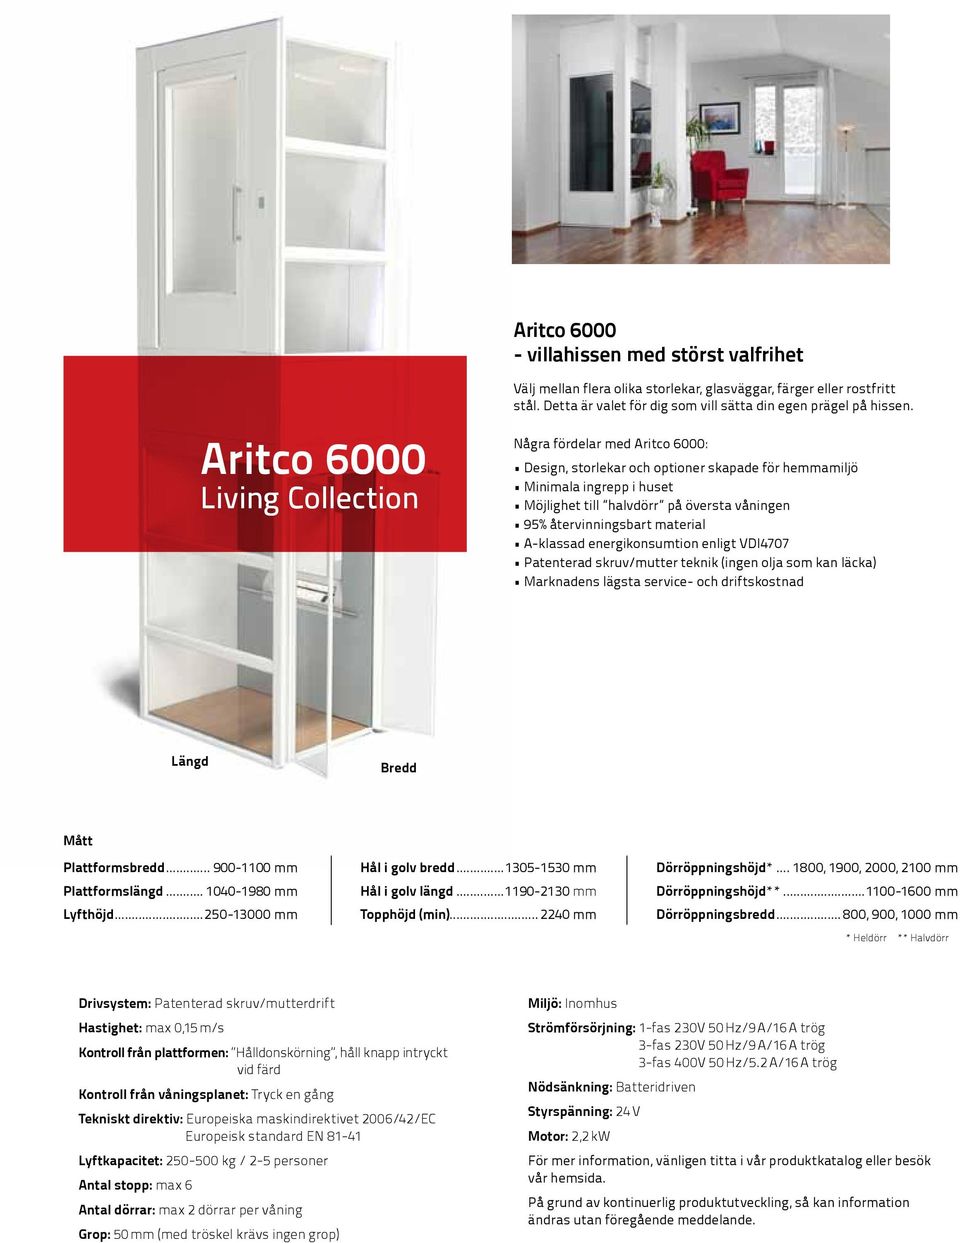 Några fördelar med Aritco 6000: Design, storlekar och optioner skapade för hemmamiljö Minimala ingrepp i huset Möjlighet till halvdörr på översta våningen 95% återvinningsbart material A-klassad